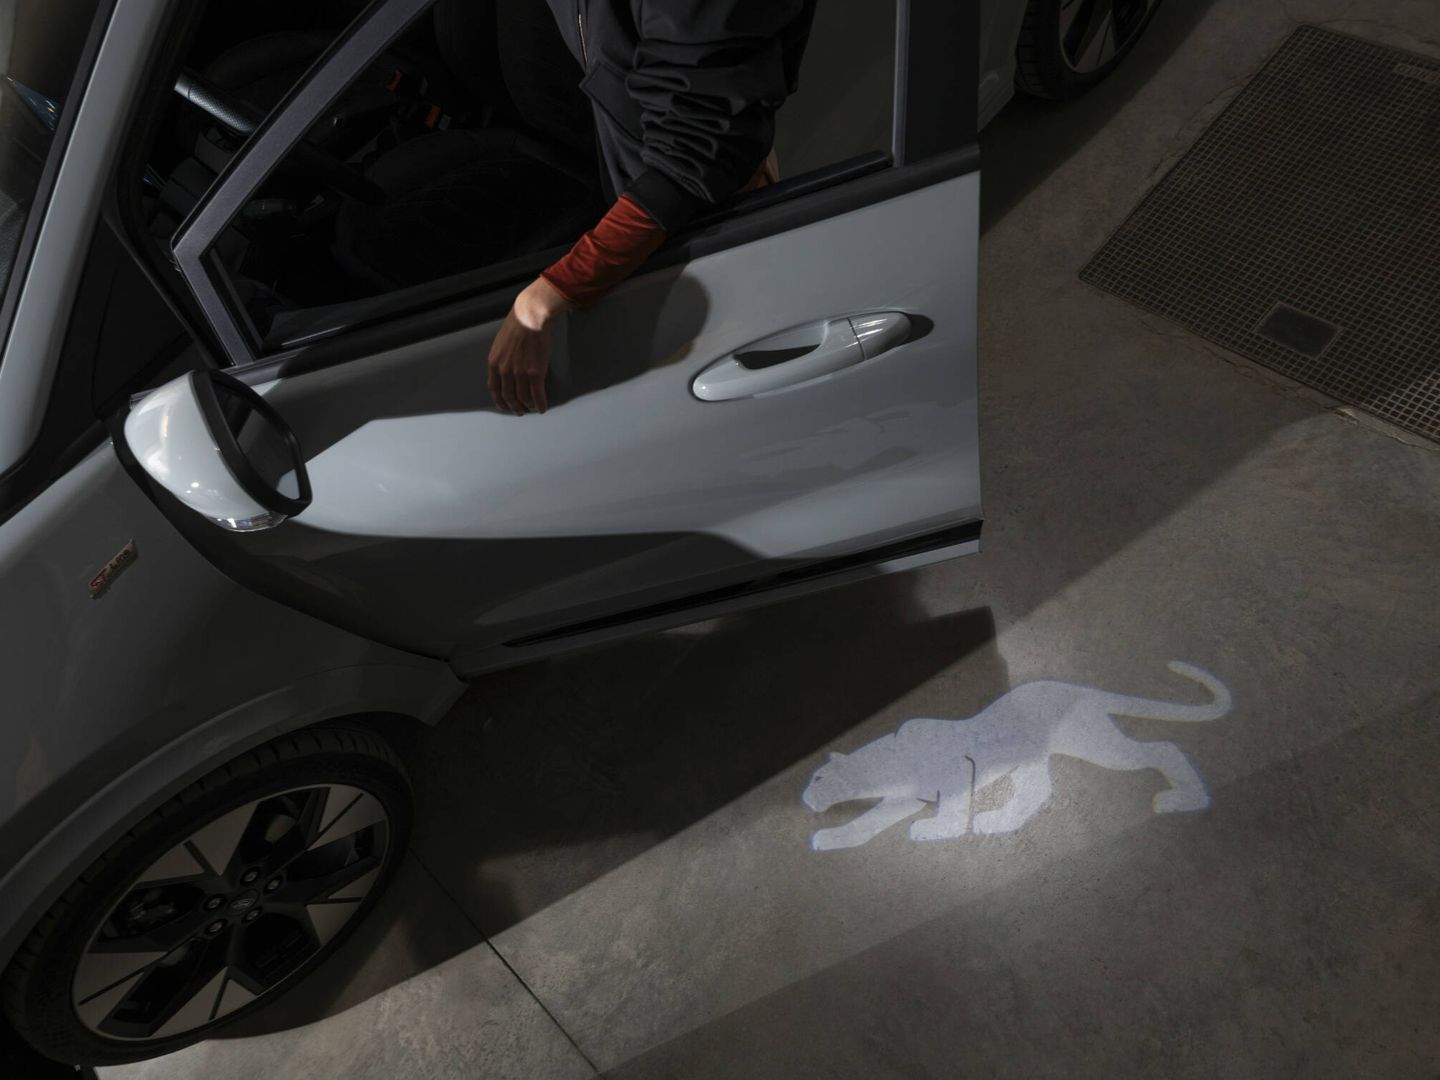 El SUV puede proyectar el logotipo de Puma en el suelo al entrar o salir del vehículo.